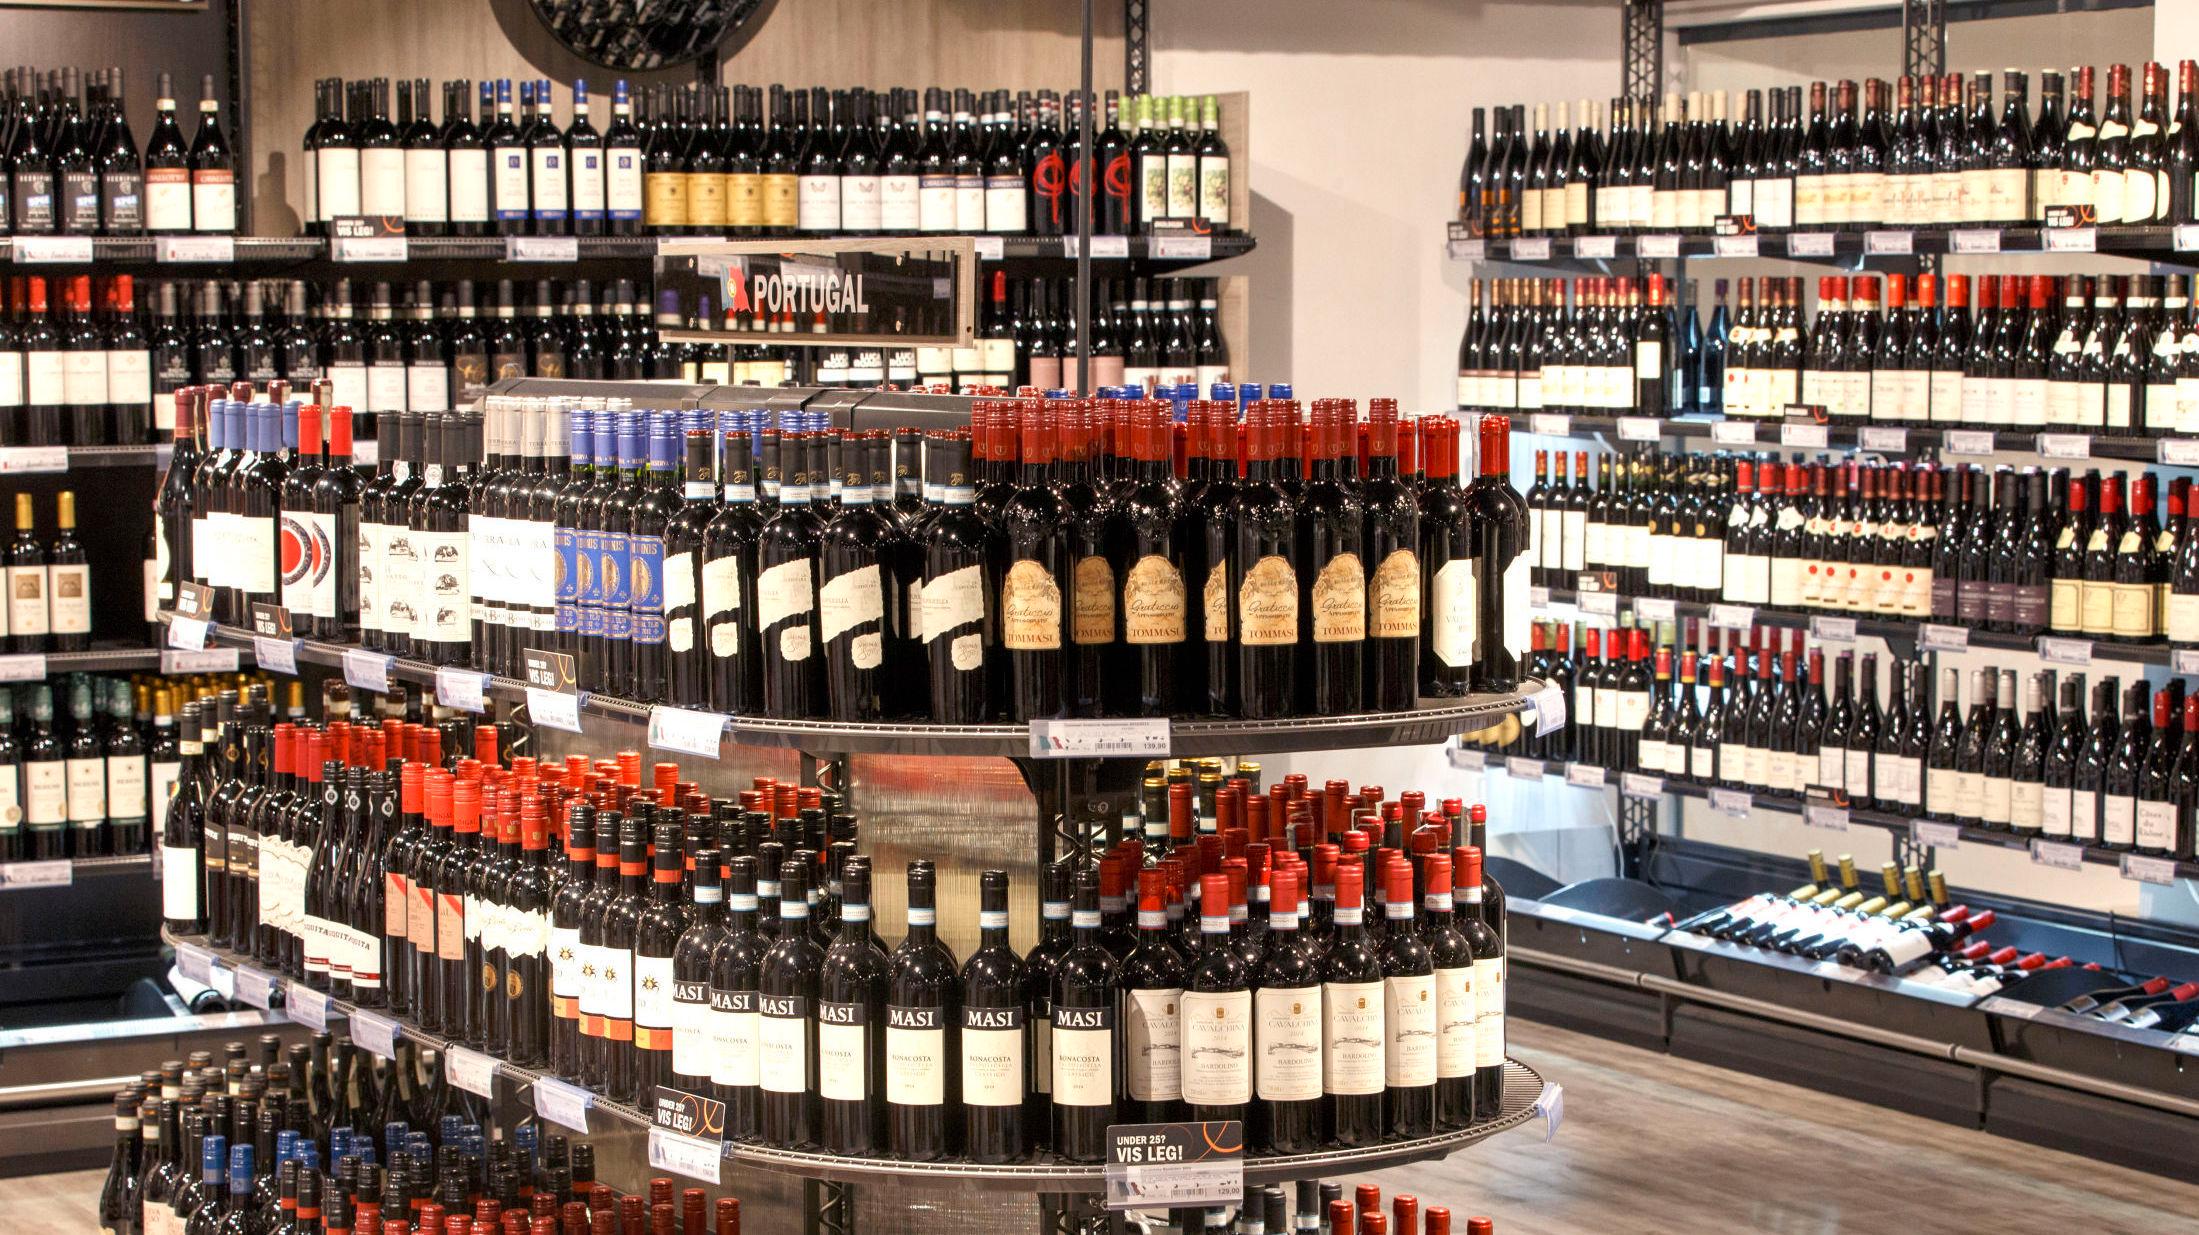 VALGETS KVALER: Det er ikke lett å finne den rette vinen blant alle flaskene på vinmonopolet. Foto: Gorm Kallestad/NTB scanpix